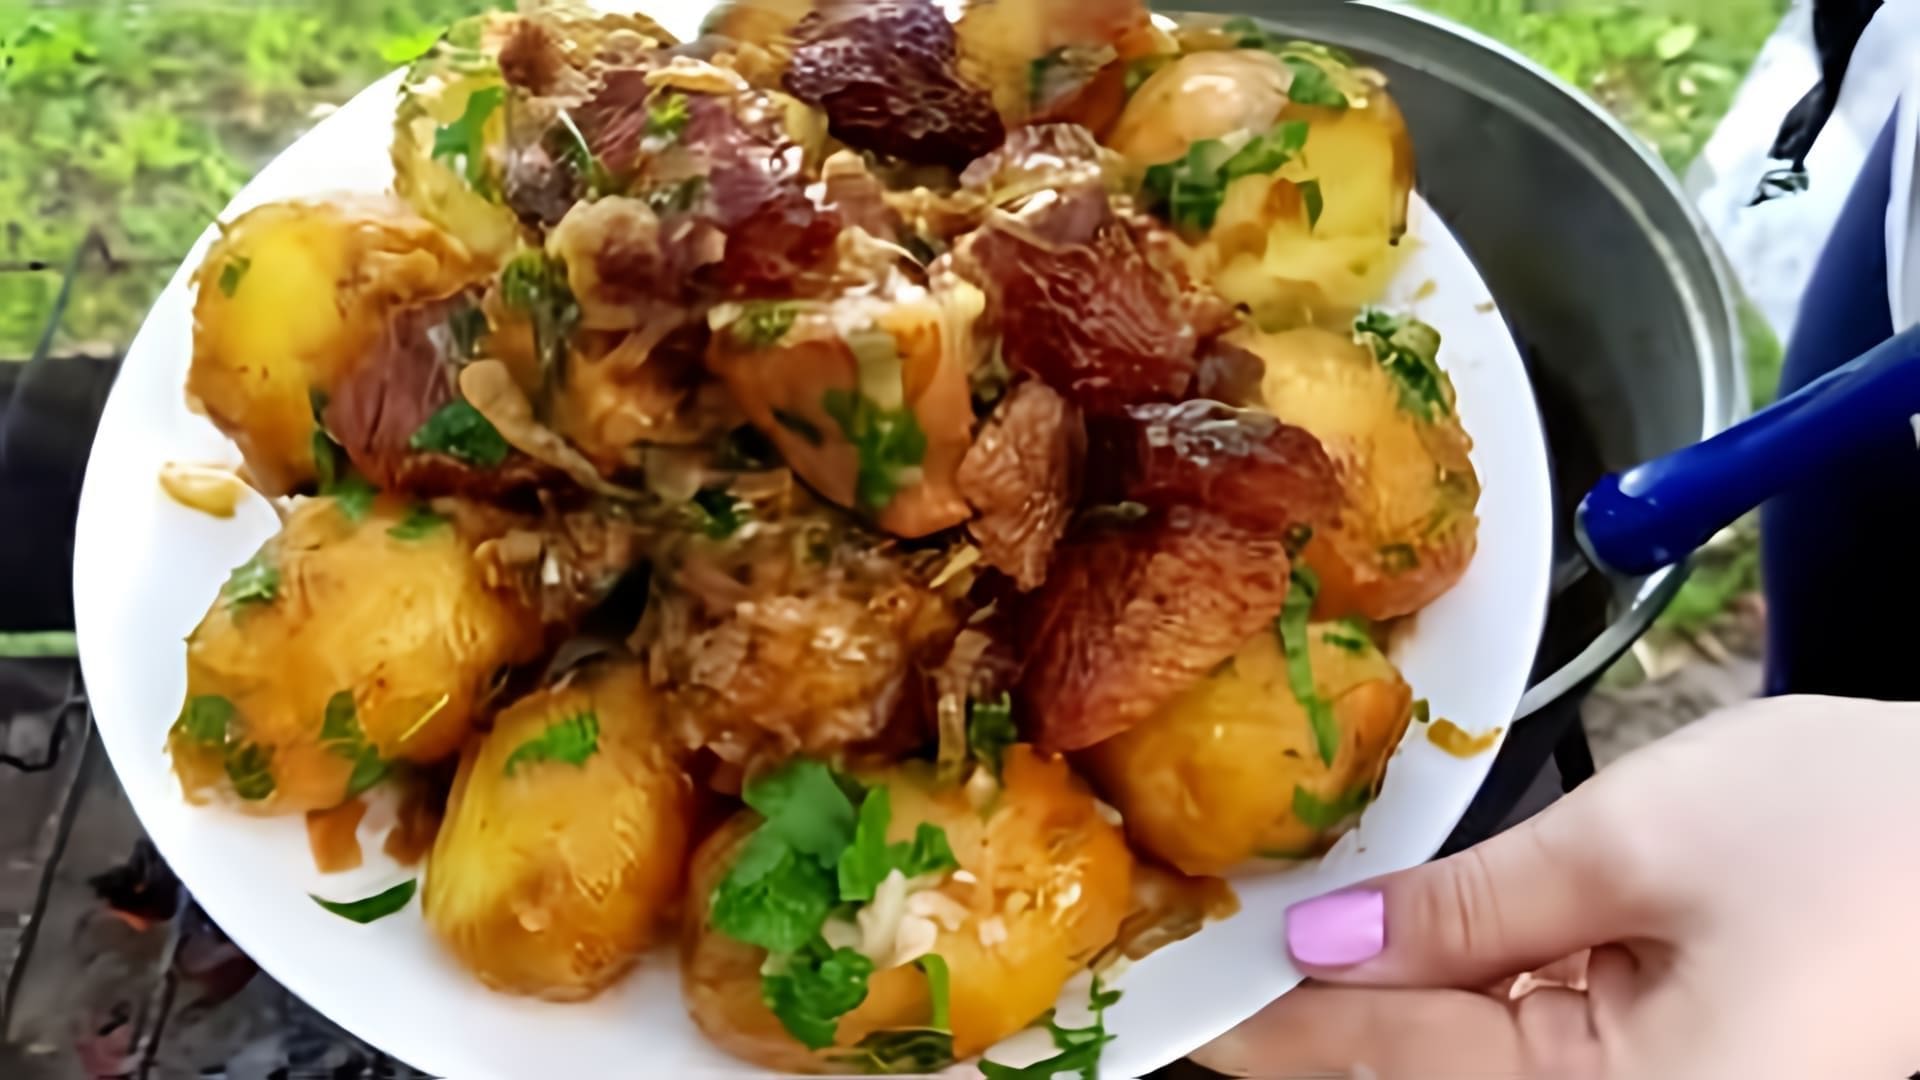 В этом видео демонстрируется процесс приготовления вкусной картошки с мясом в казане на природе